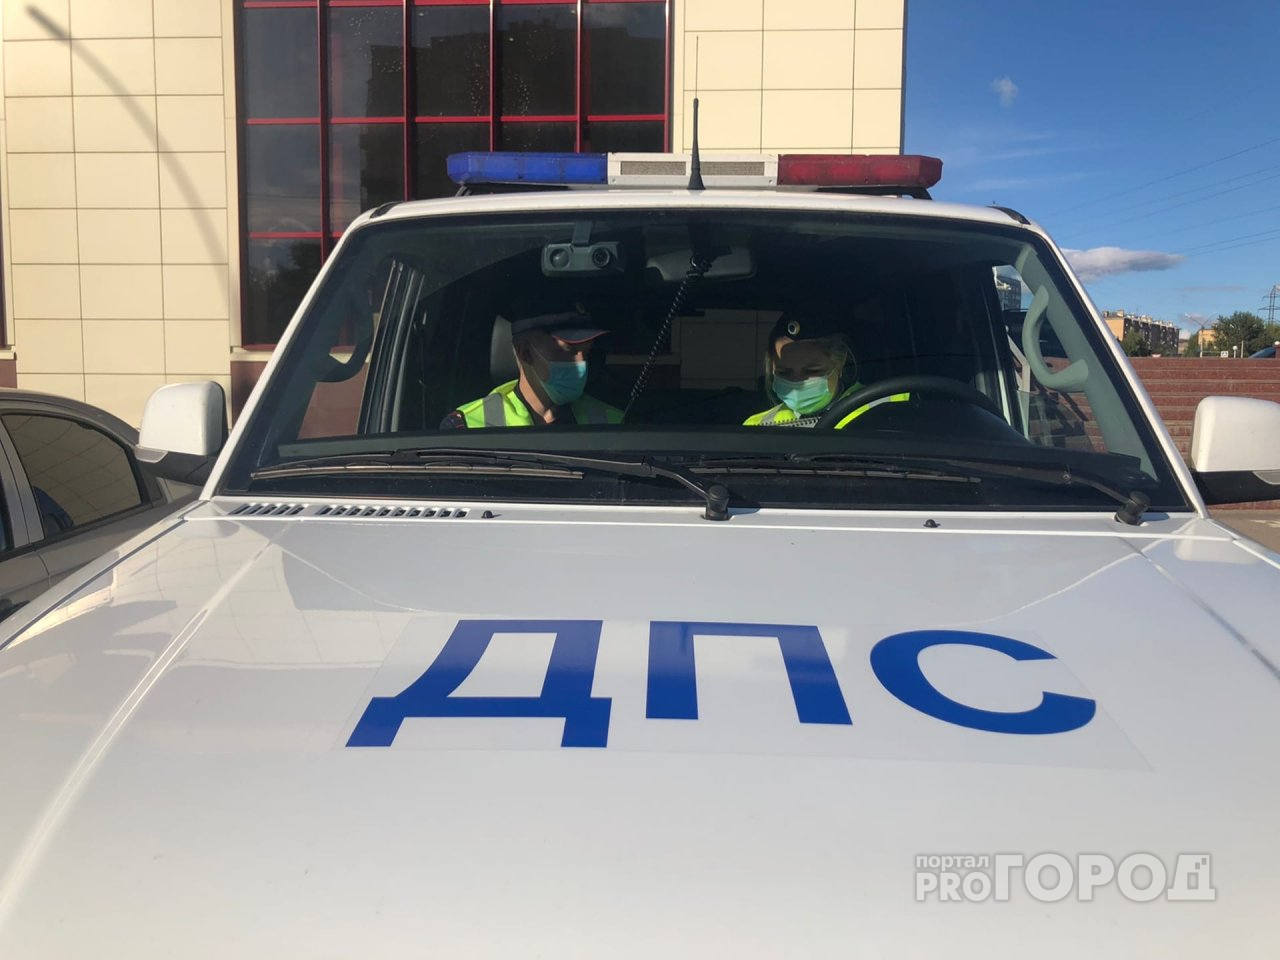 Житель Ухты получил 5 суток ареста за тонированный автомобиль